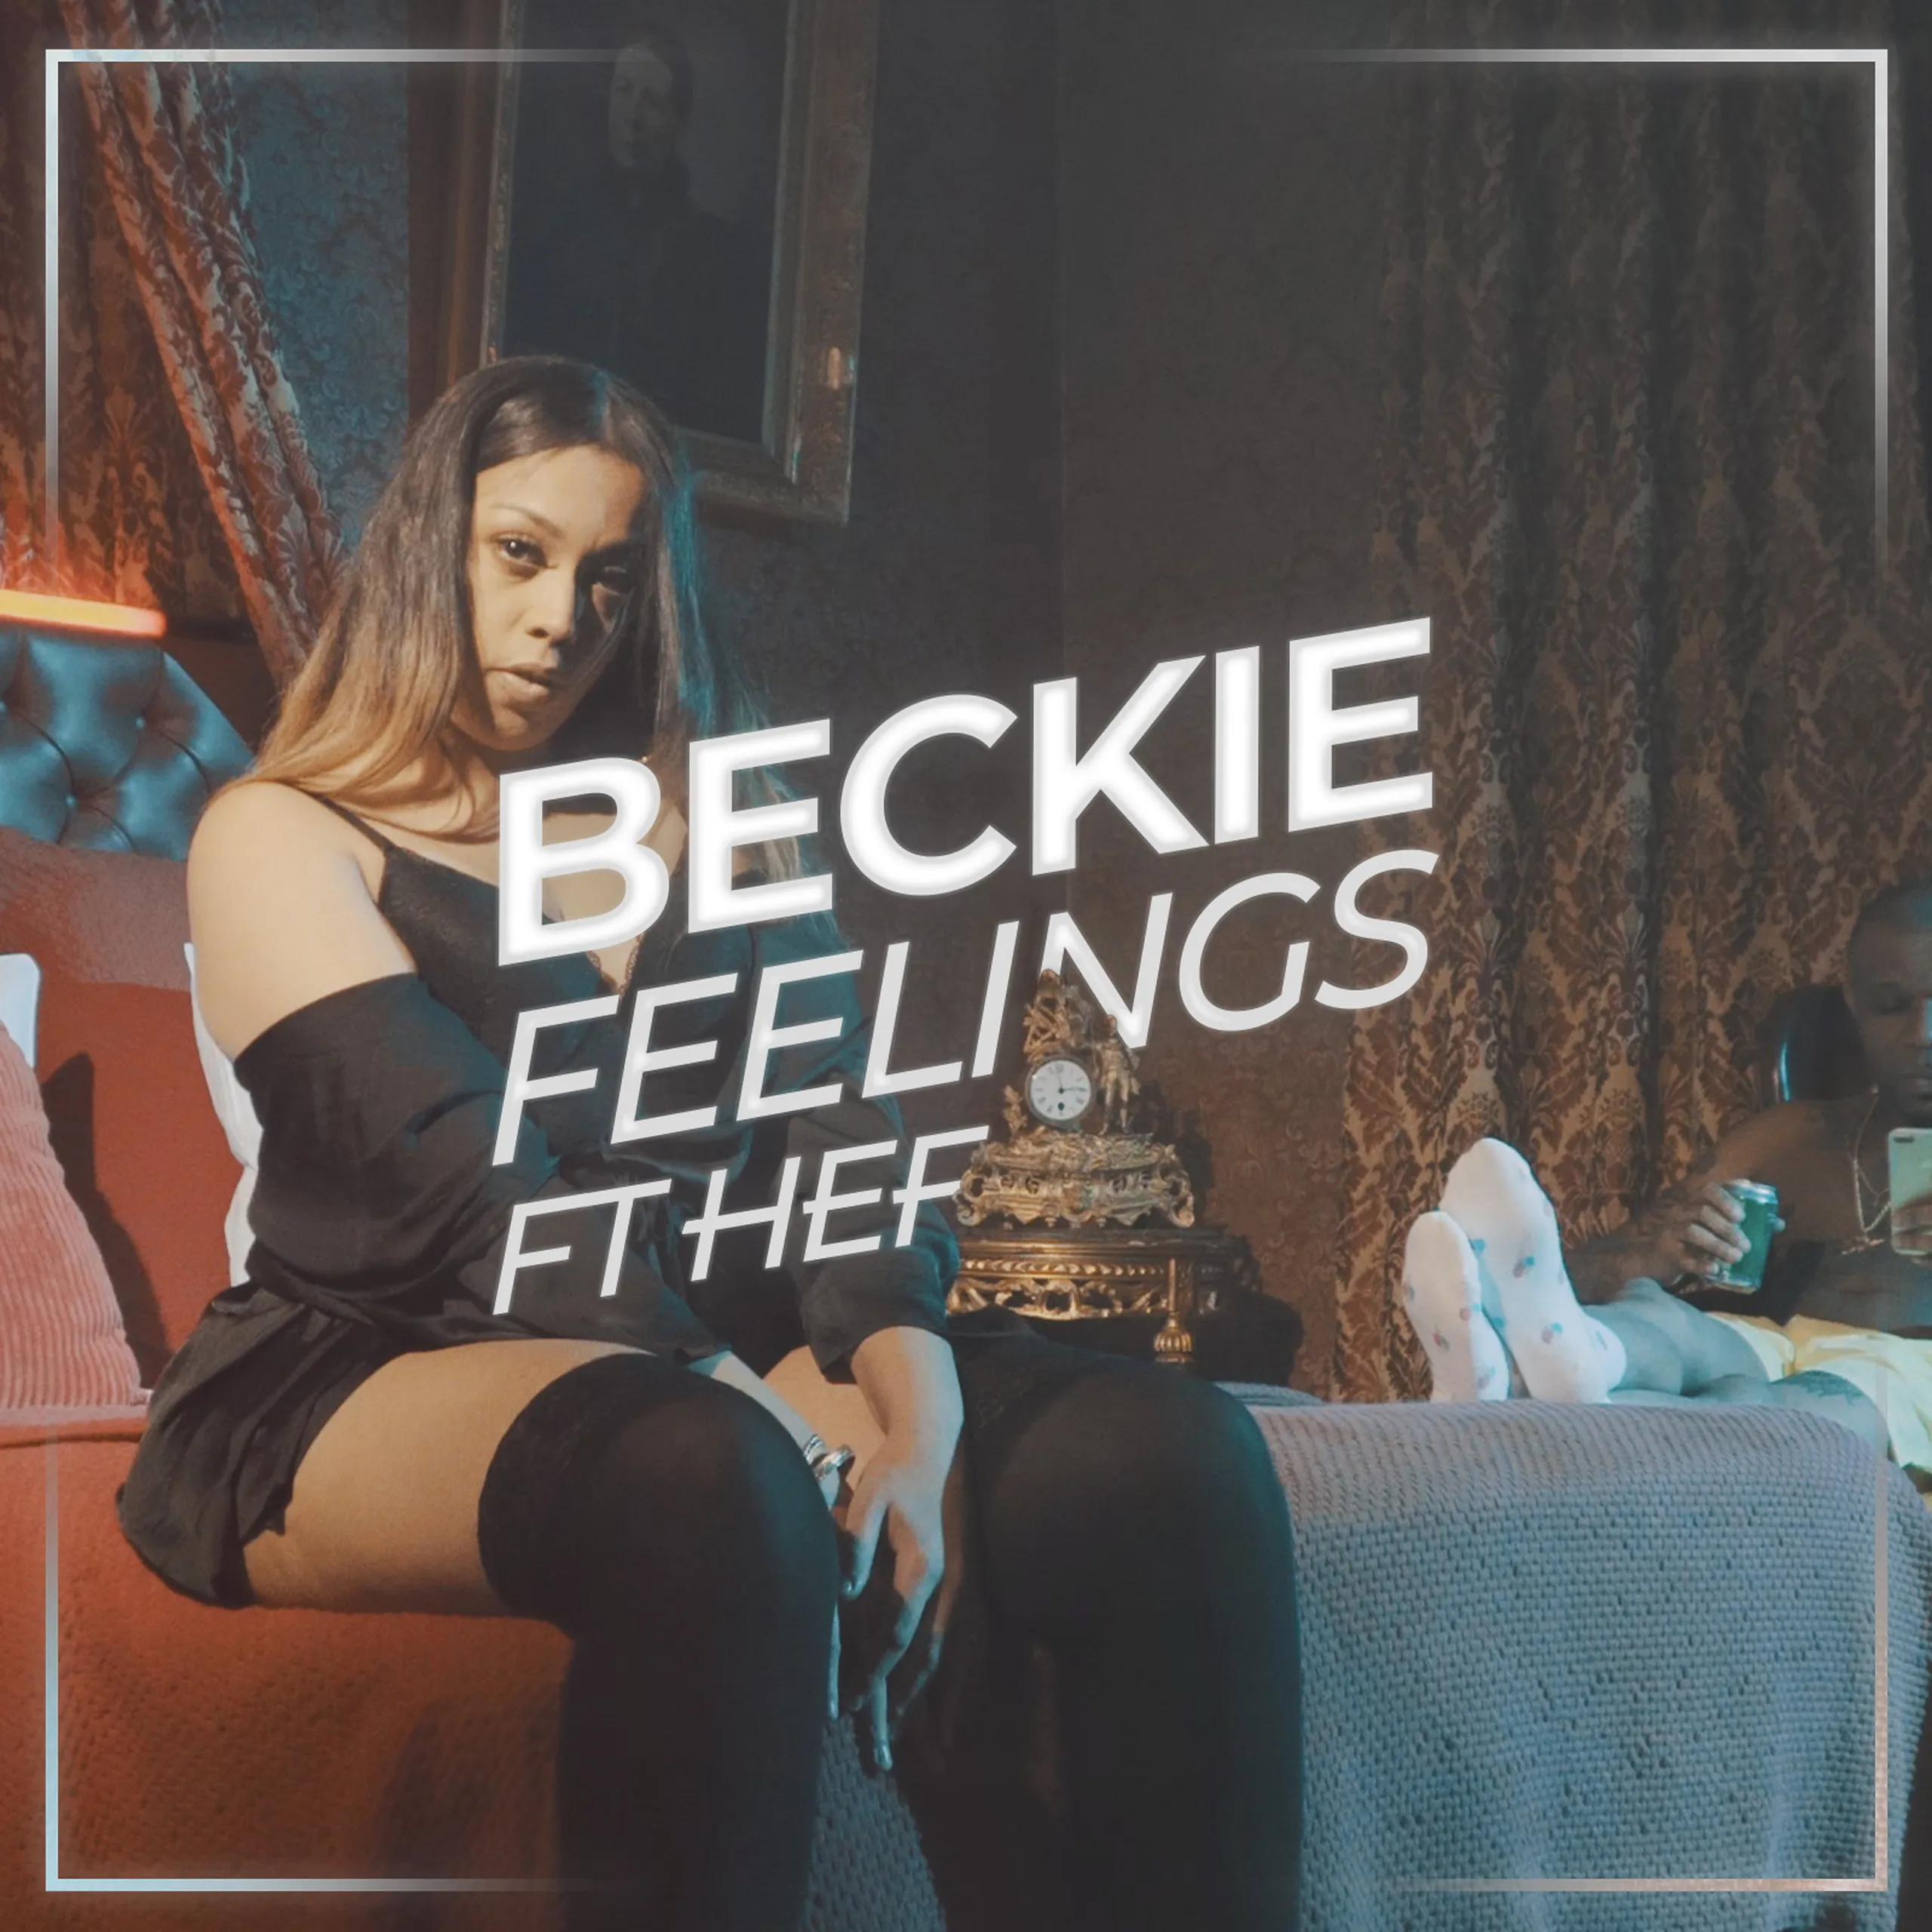 Beckie feelings quality